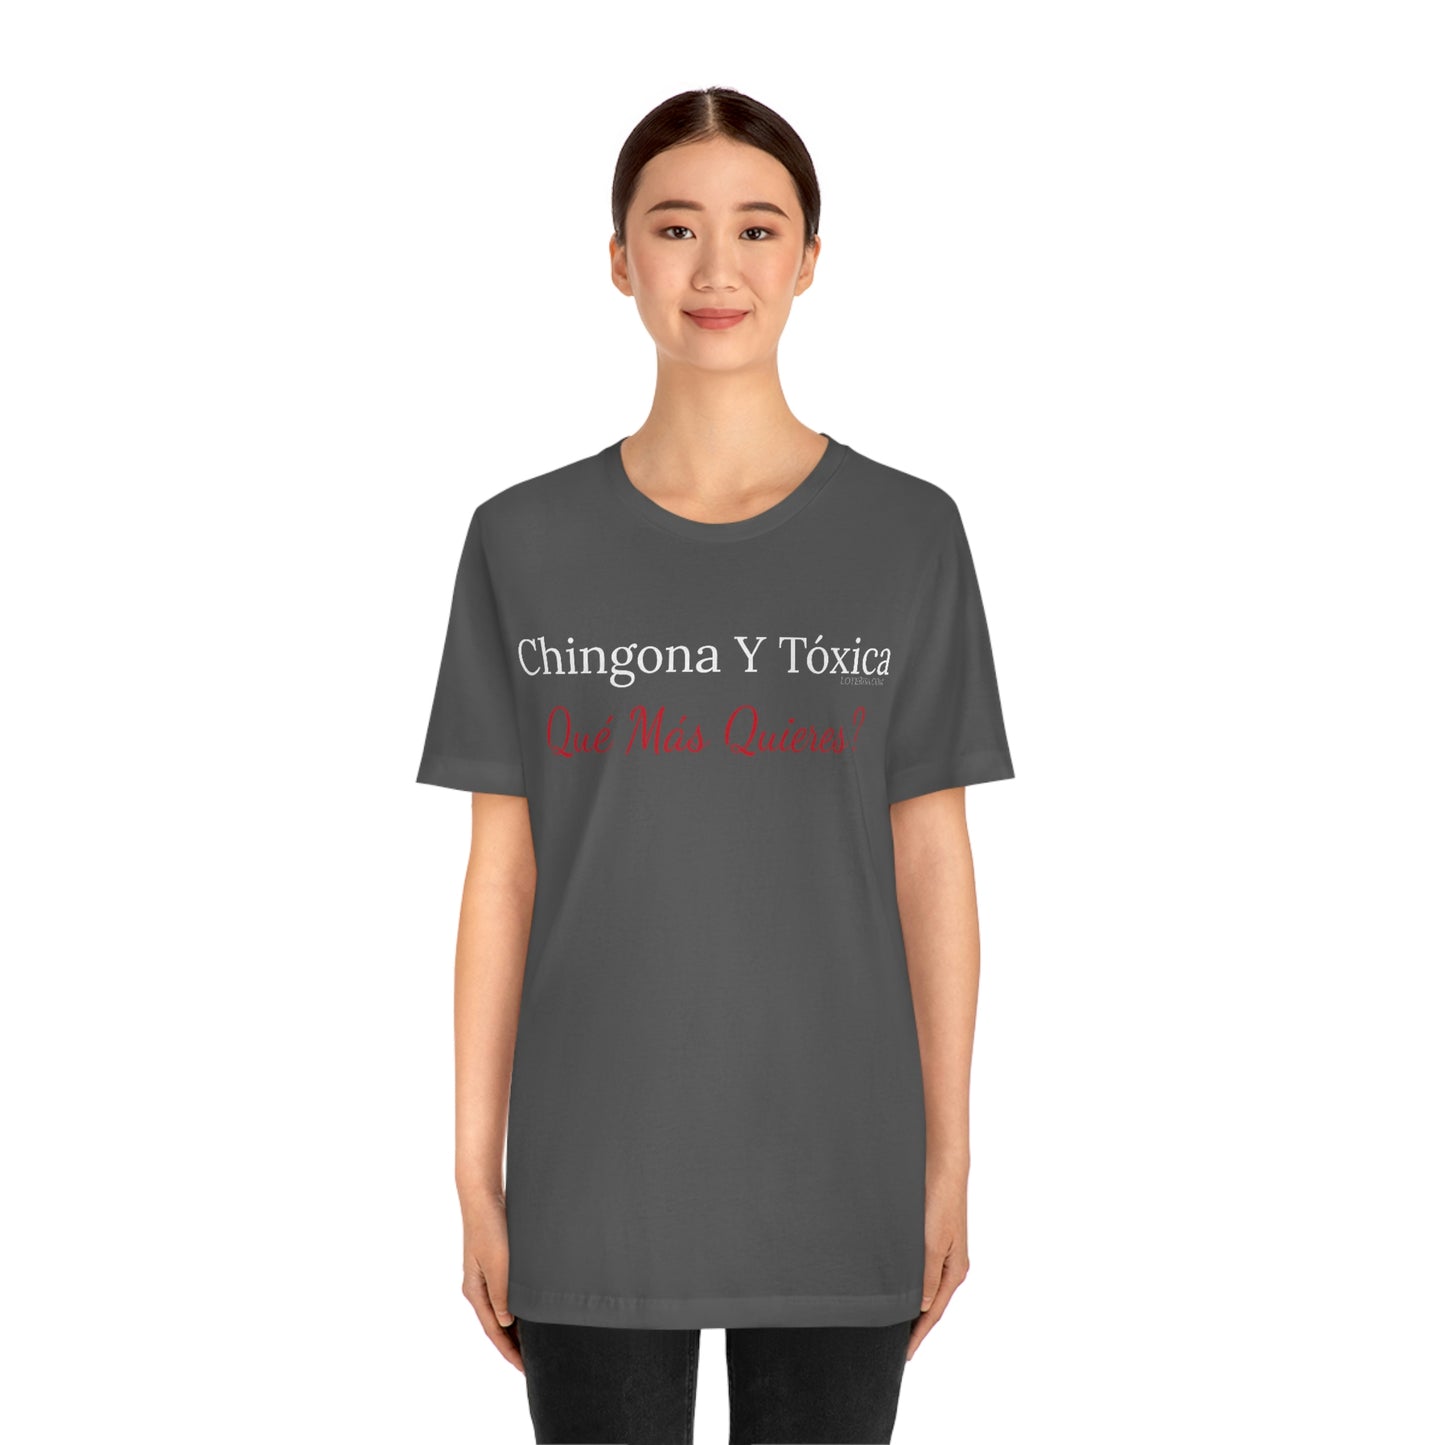 Chingona Y Tóxica Qué Más Quieres? T-Shirt